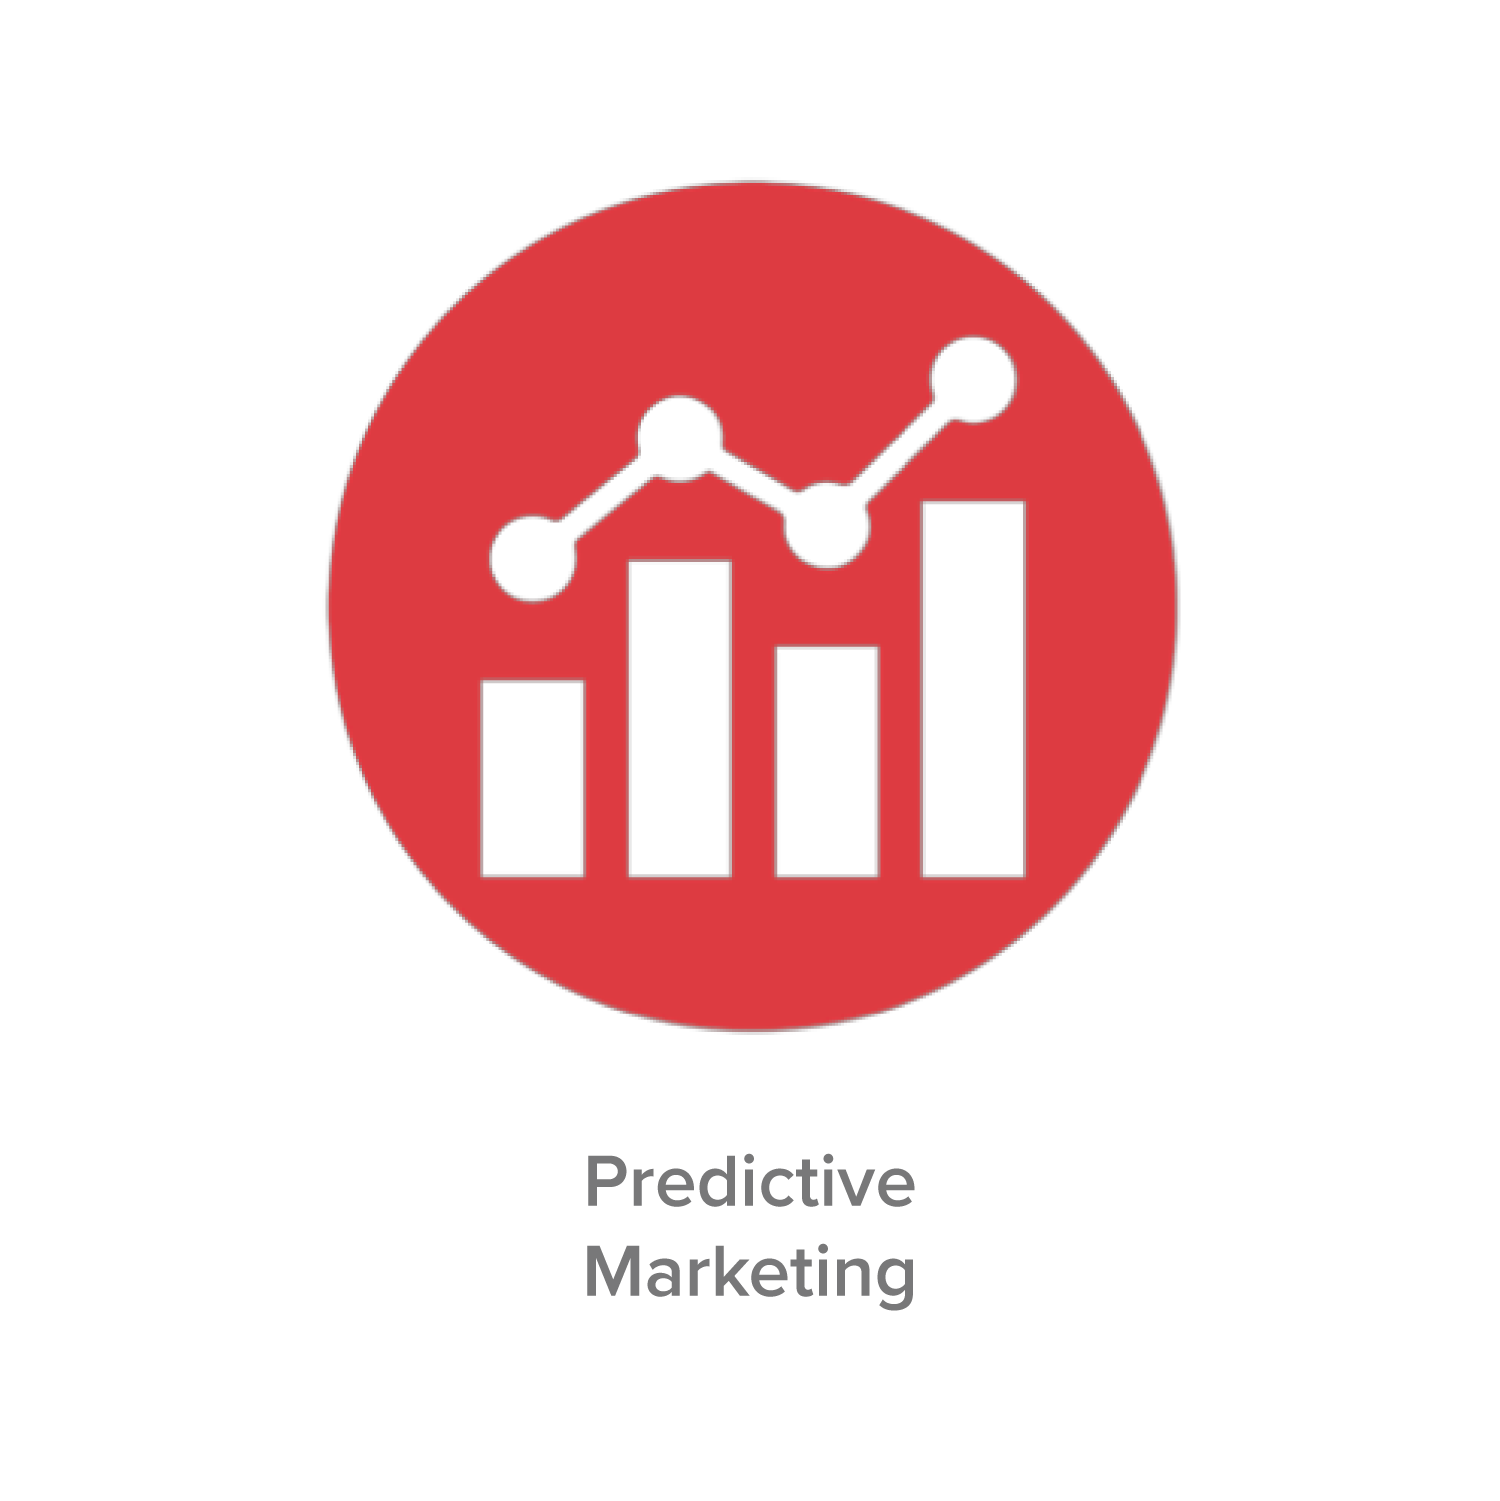 Predictive Marketing graphic